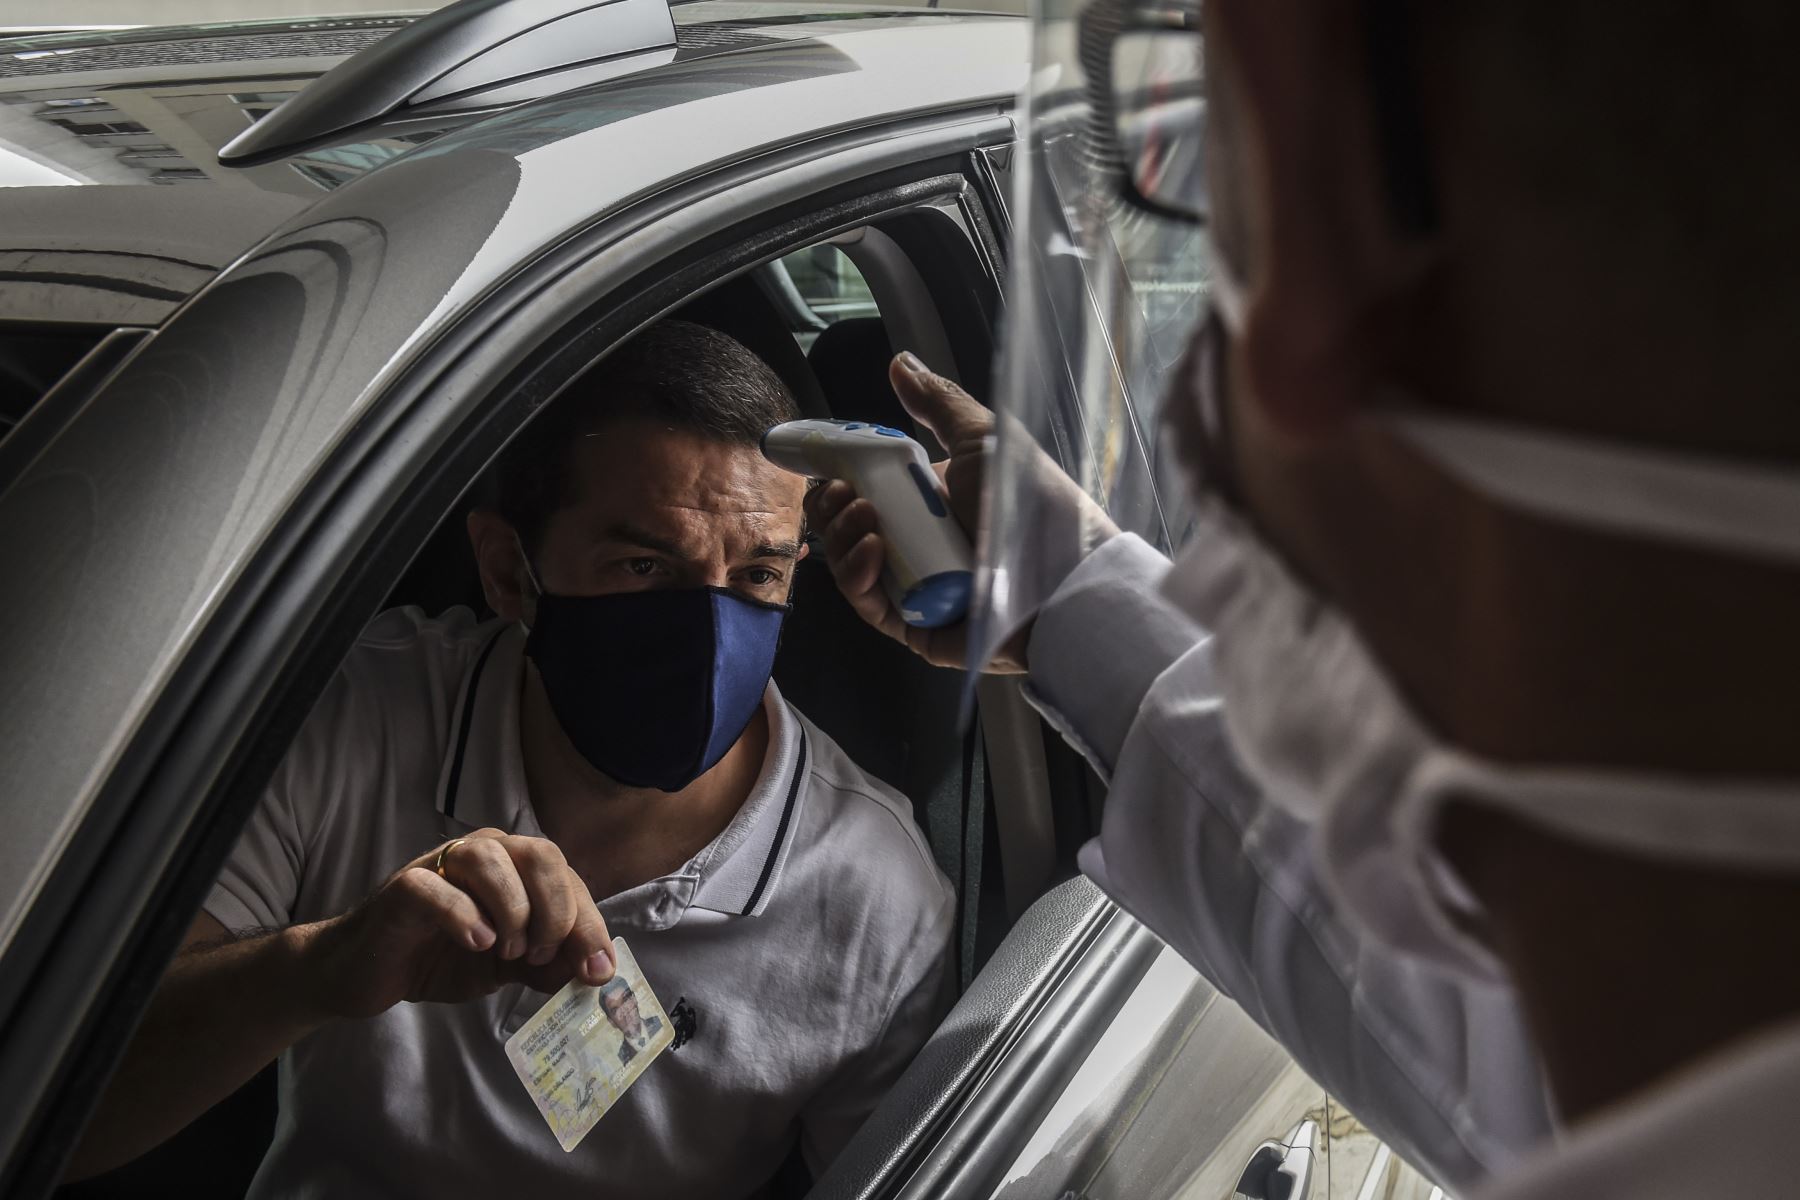 Un hombre muestra su identificación y se controla la temperatura de su cuerpo en la entrada del centro comercial, durante la nueva pandemia de coronavirus COVID-19, en Medellín. Foto: AFP